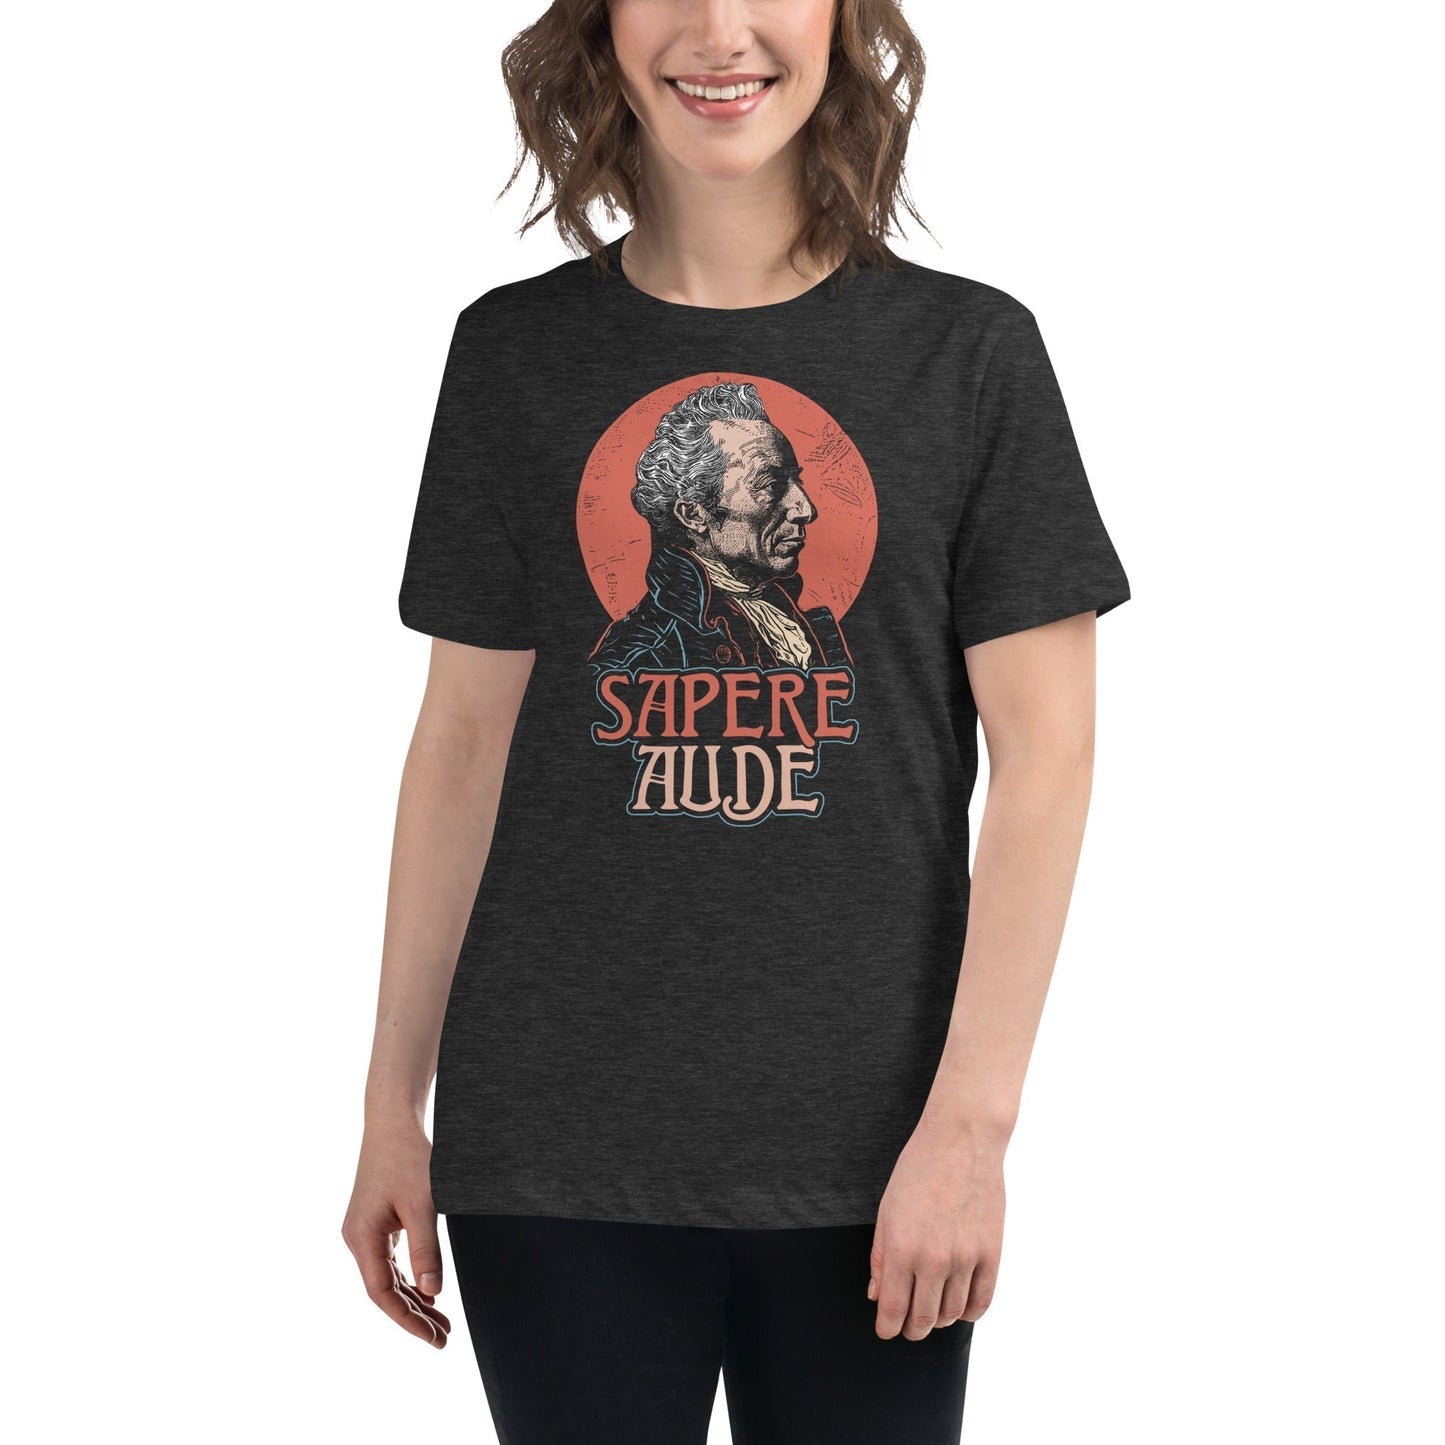 Immanuel Kant - Sapere Aude - Women's T-Shirt